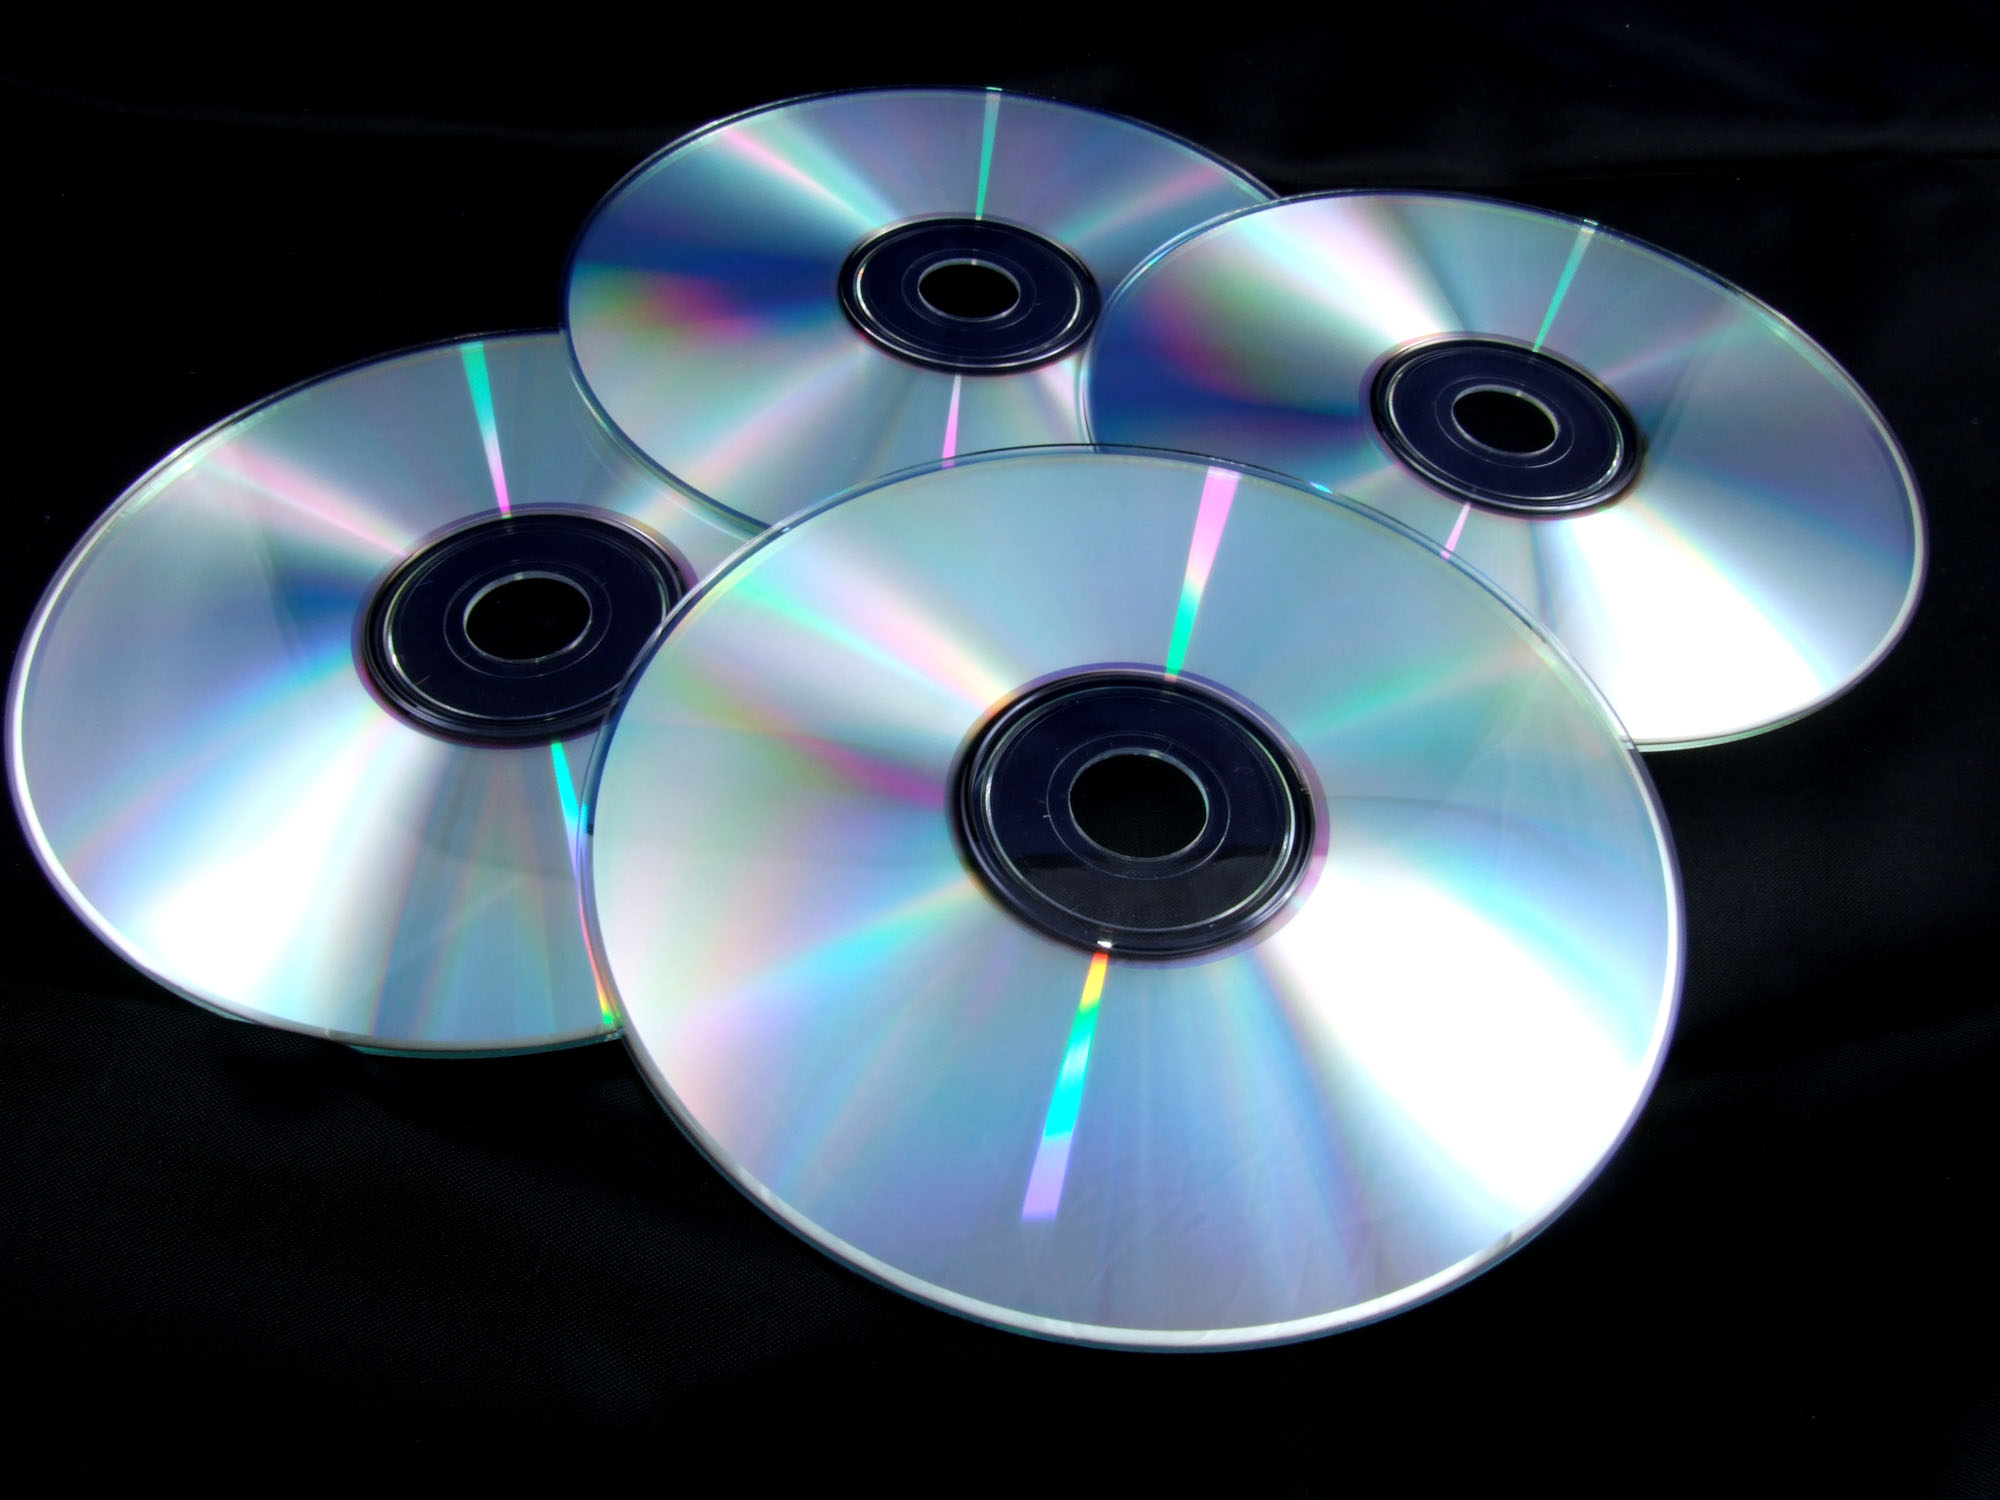 Первая компакт. CD - Compact Disk (компакт диск). Лазерный компакт-диск (CD, CD-ROM).. DVD-диски (DVD – Digital versatile Disk, цифровой универсальный диск),. Оптические лазерные диски.